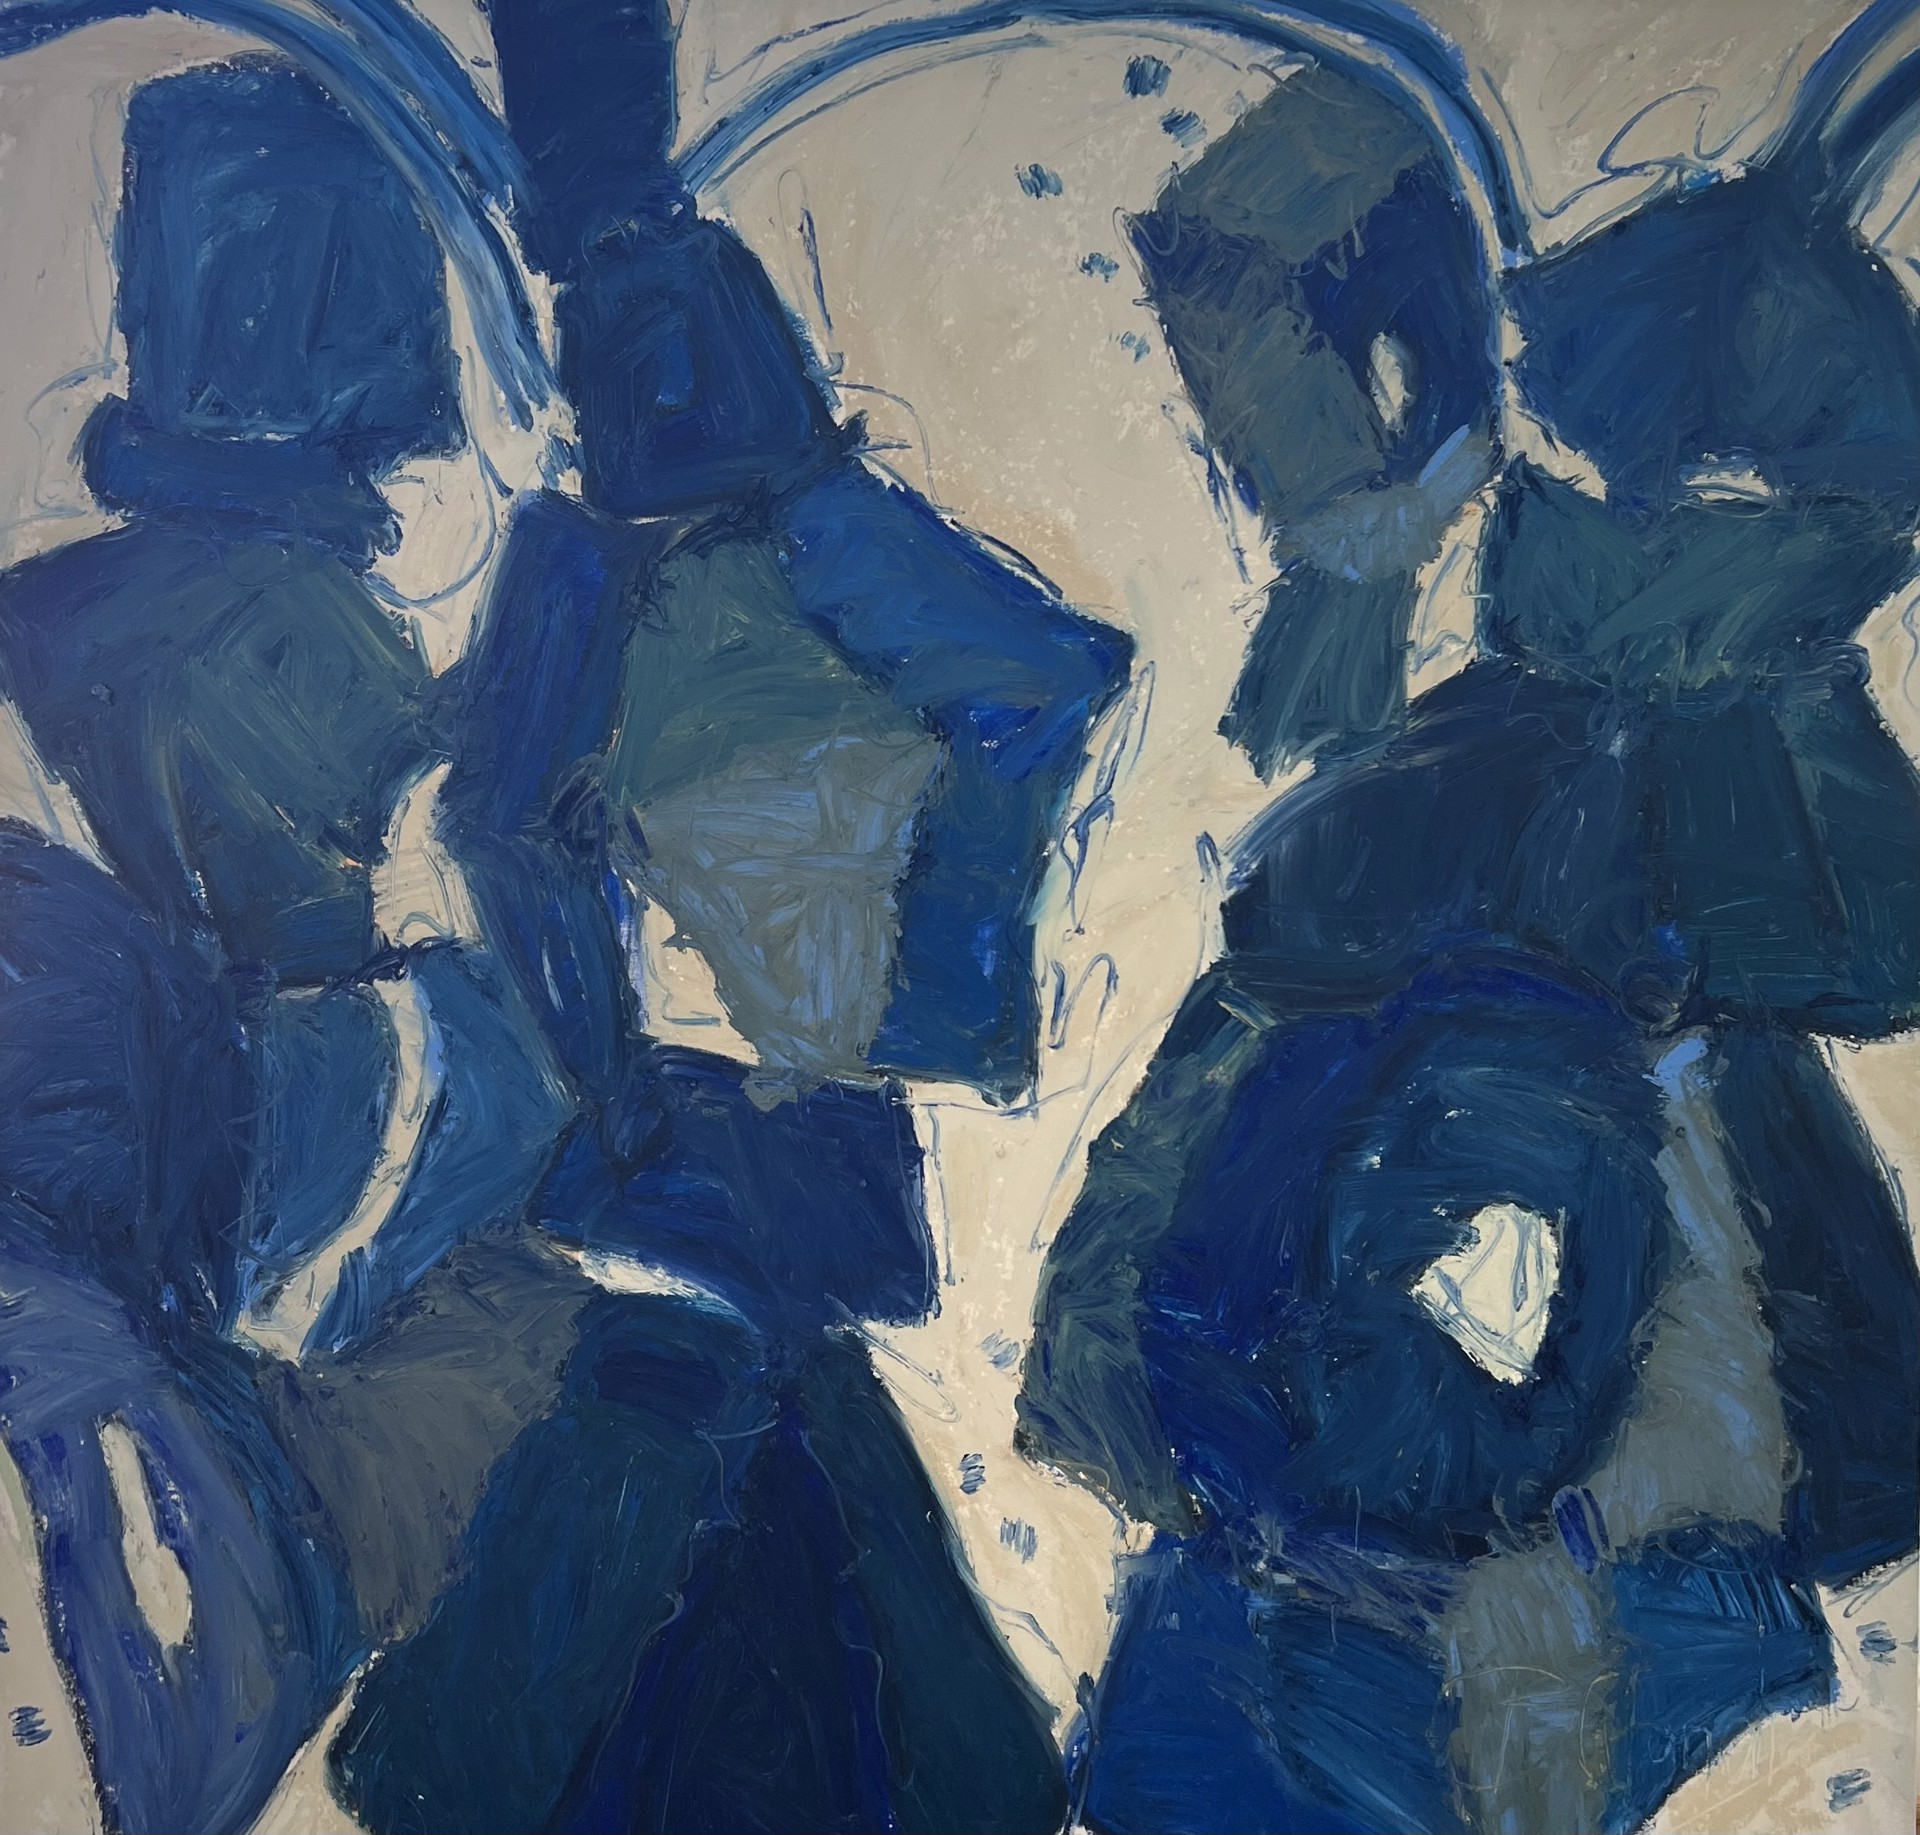 A Decade in Blue by Beth Gandy